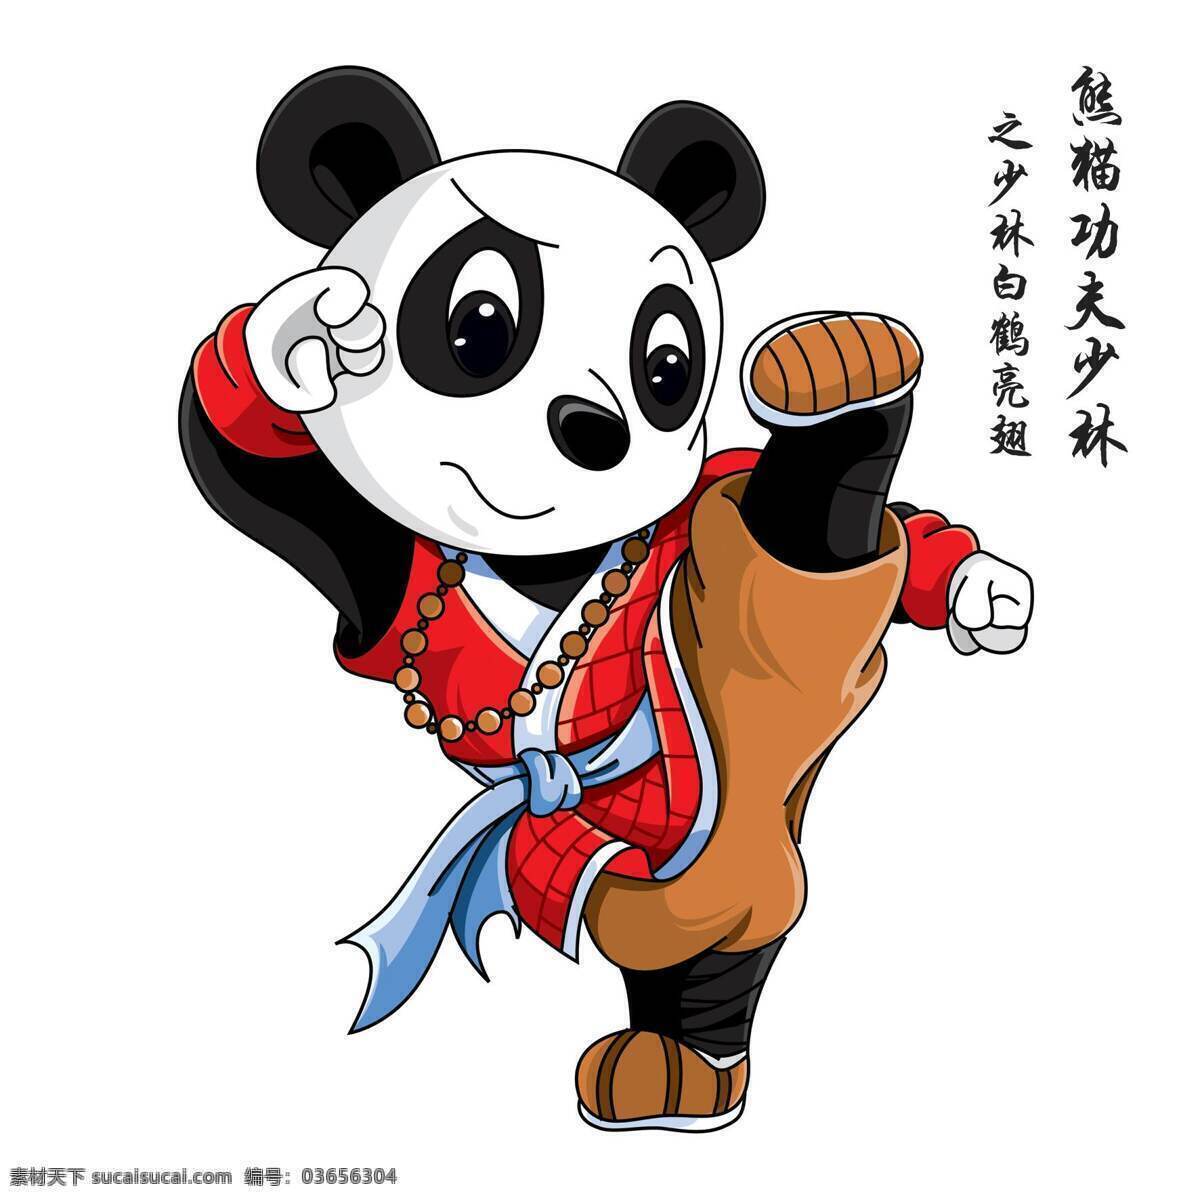 卡通功夫熊猫 卡通 功夫 熊猫 踢腿 武术 动漫人物 动漫动画